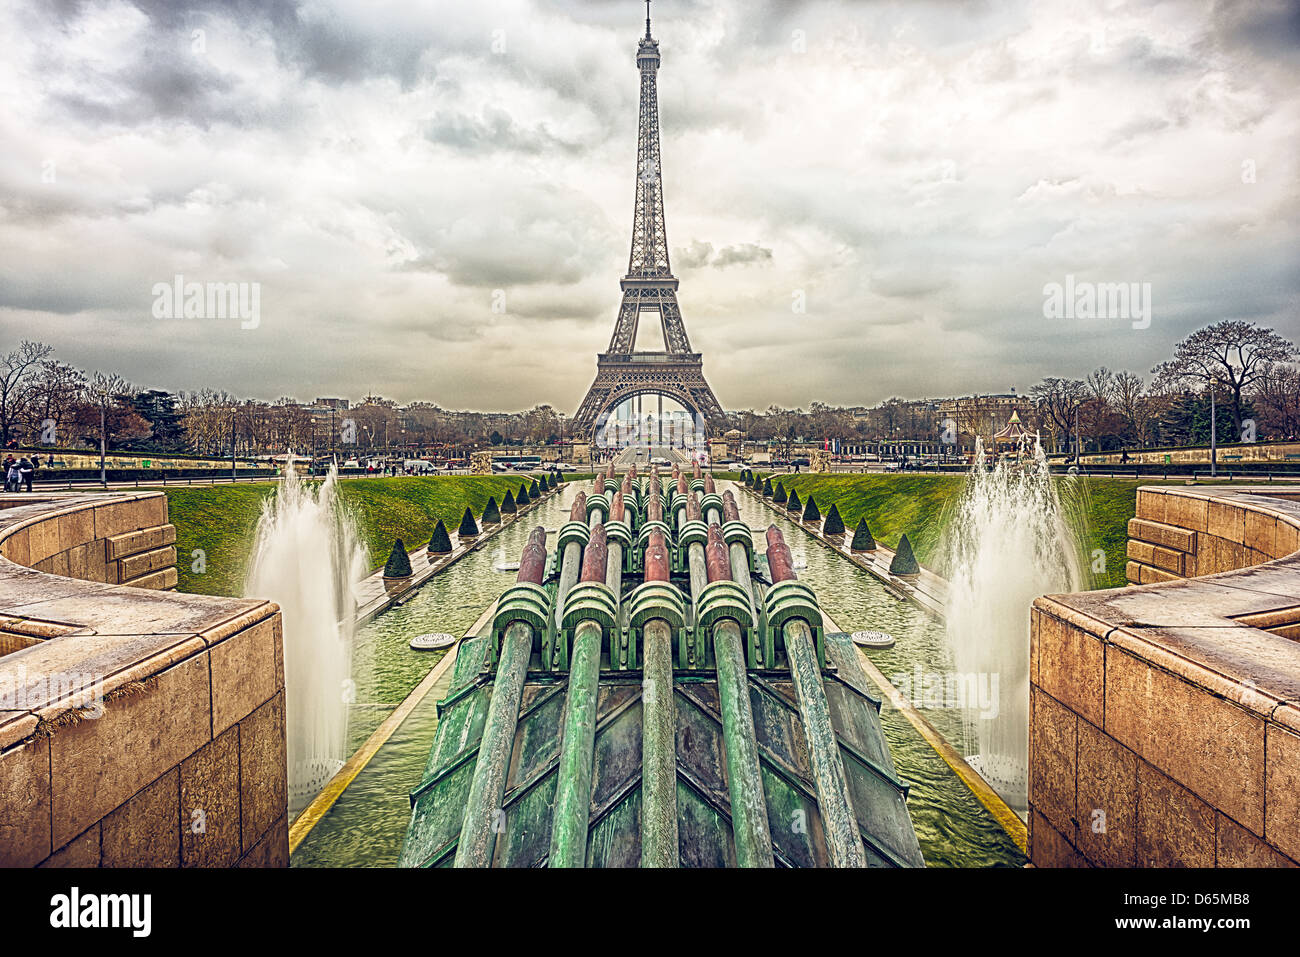 La torre Eiffel e cannoni acquatici in un giorno nuvoloso Foto Stock